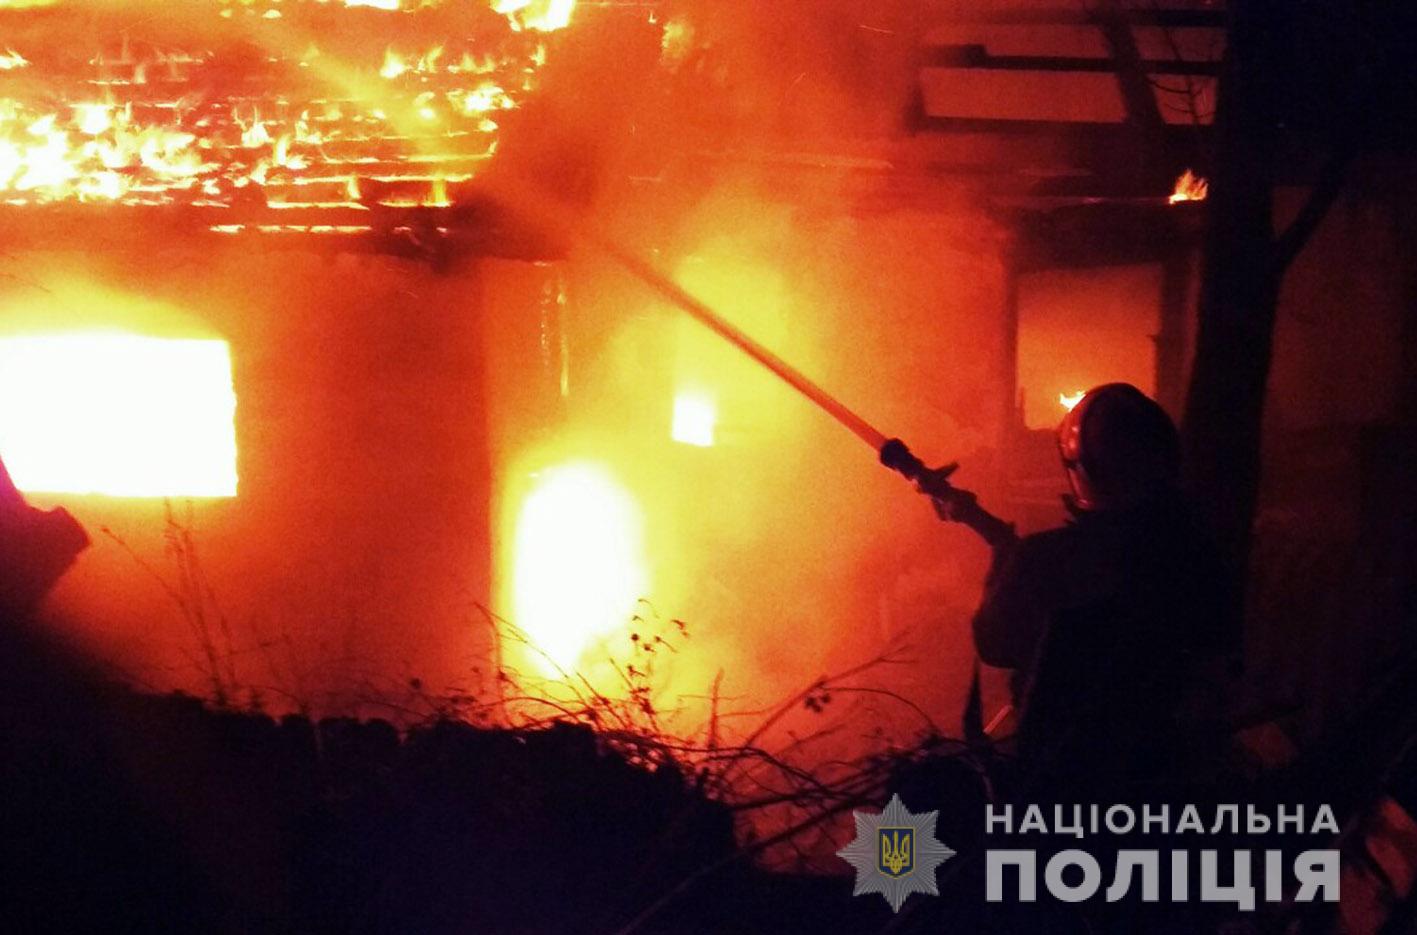 17 лютого в селі Судилків Шепетівського району з різницею в годину загорілись два приватних будинки. Дослідивши пожежне сміття, експерти дійшли висновку, що причиною загорання став підпал.